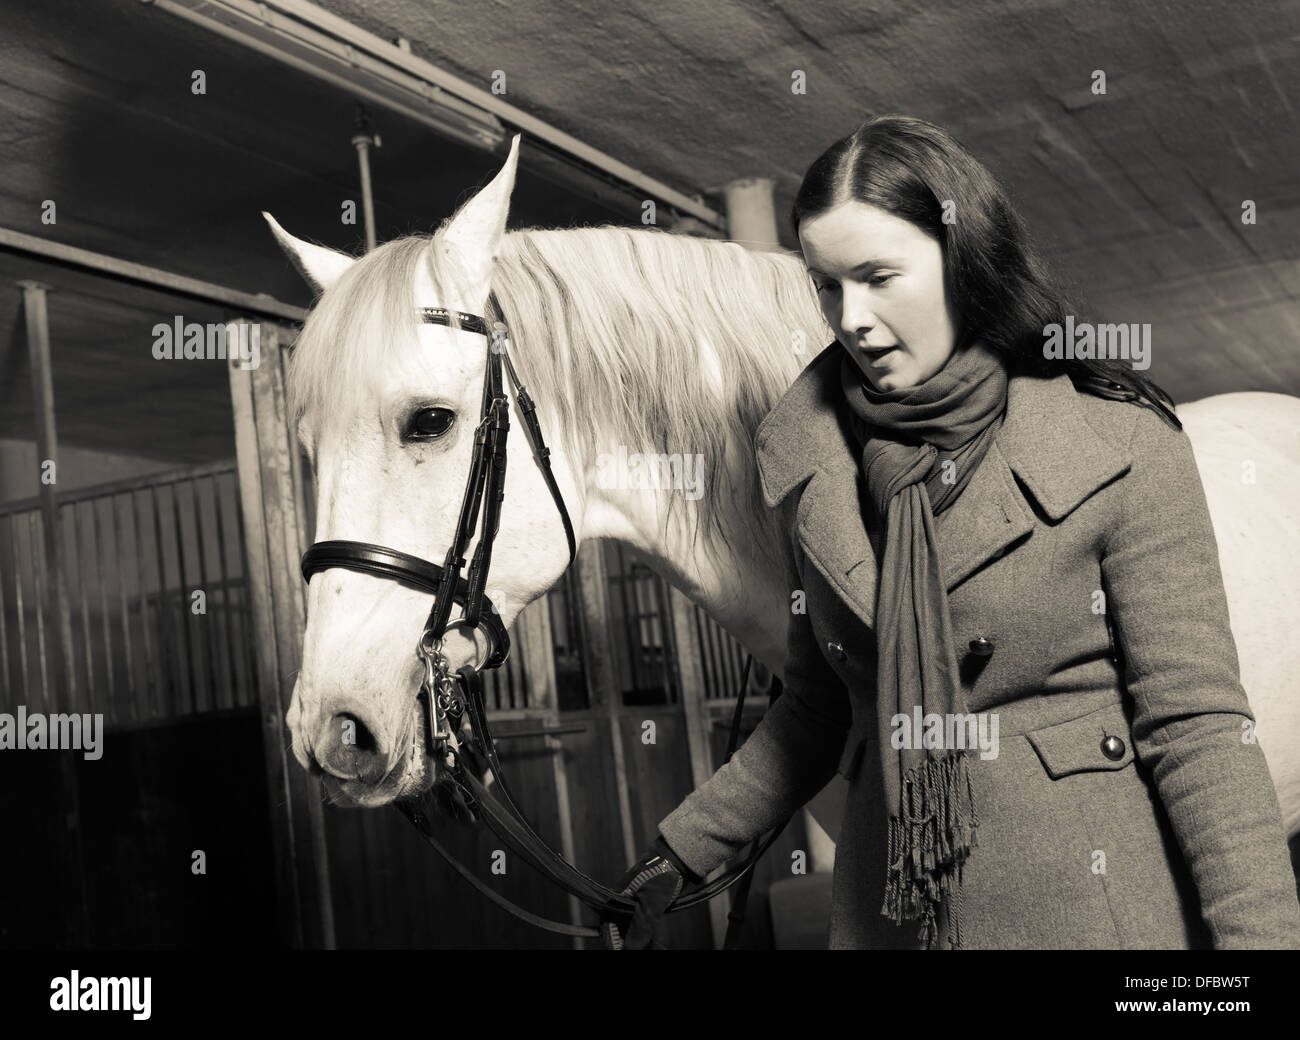 Frau führt weißes Pferd in eine Scheune, Horizont-format Stockfoto